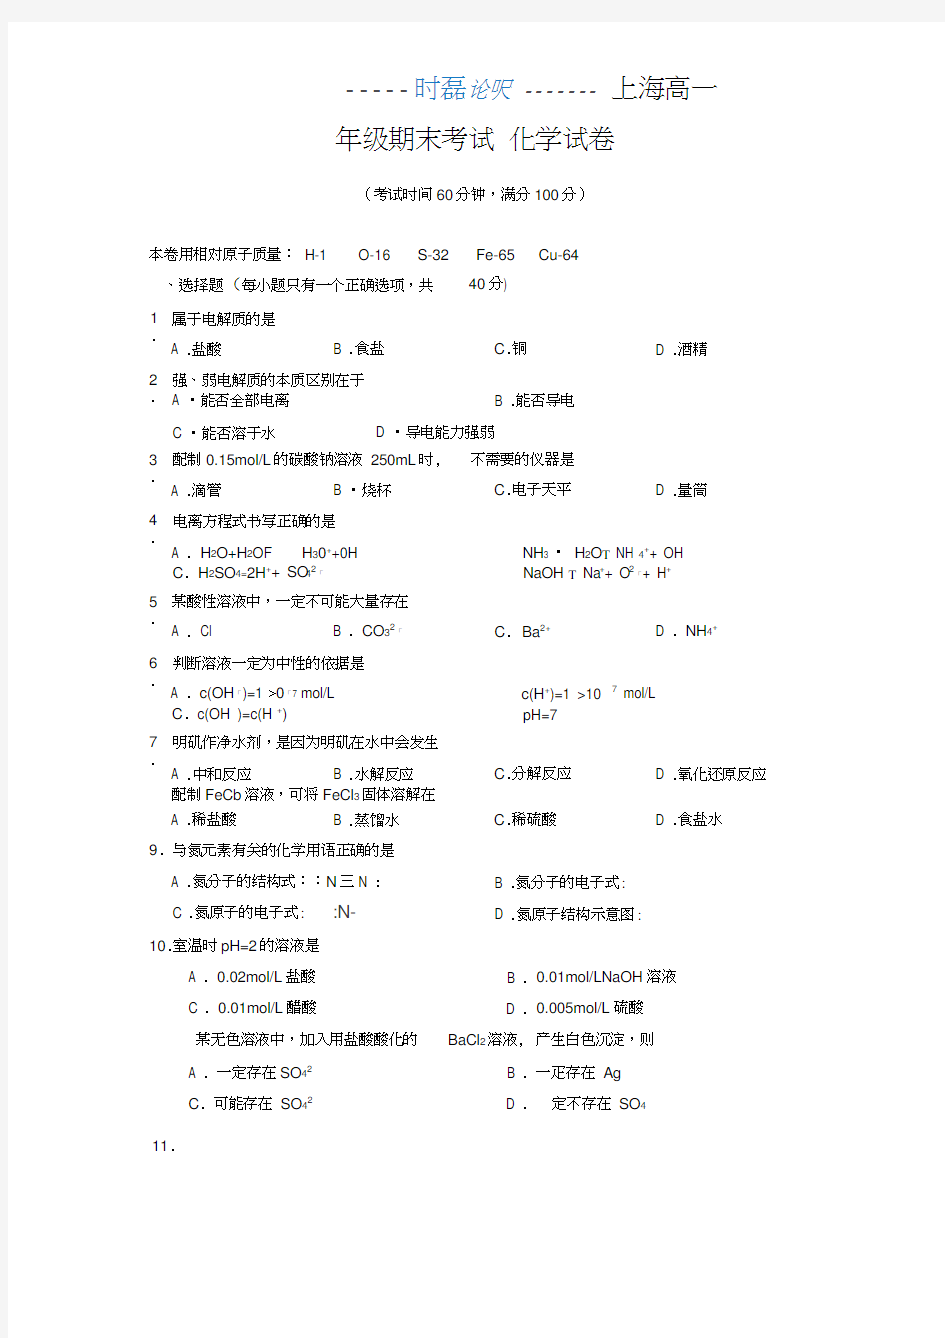 上海化学高一期末考试卷(试卷及答案)